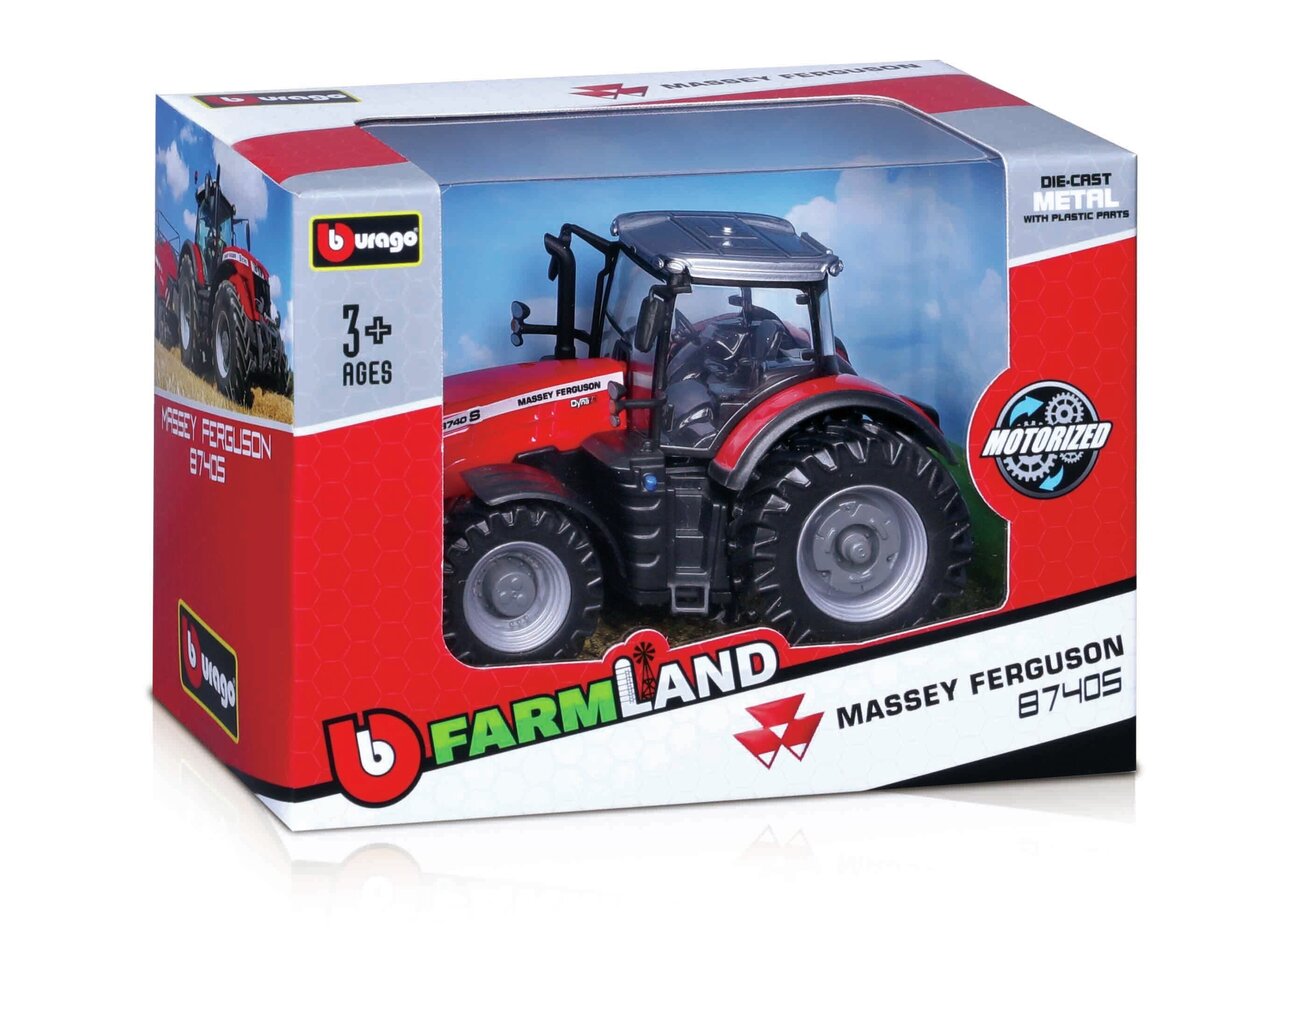 Lauku traktors Bburago 10 cm, 18-31610 cena un informācija | Rotaļlietas zēniem | 220.lv